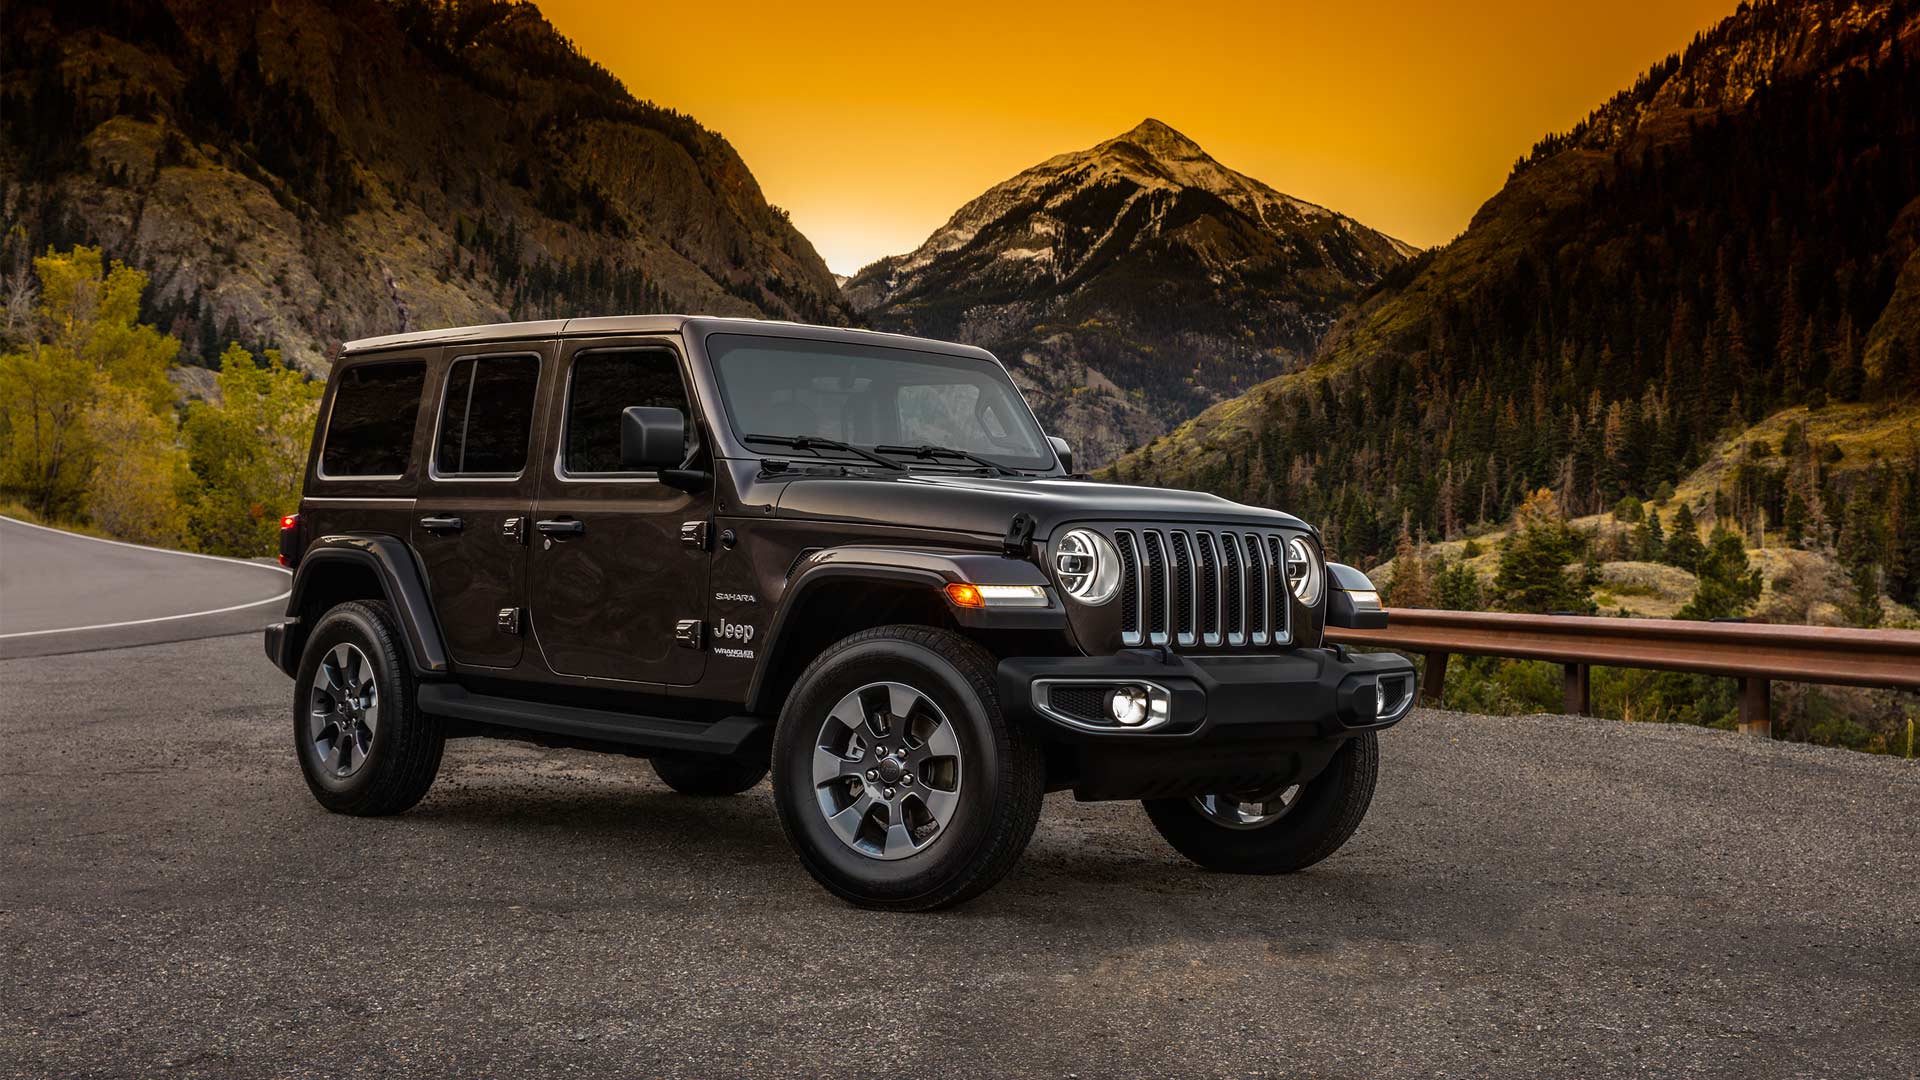 2018-Jeep-Wrangler